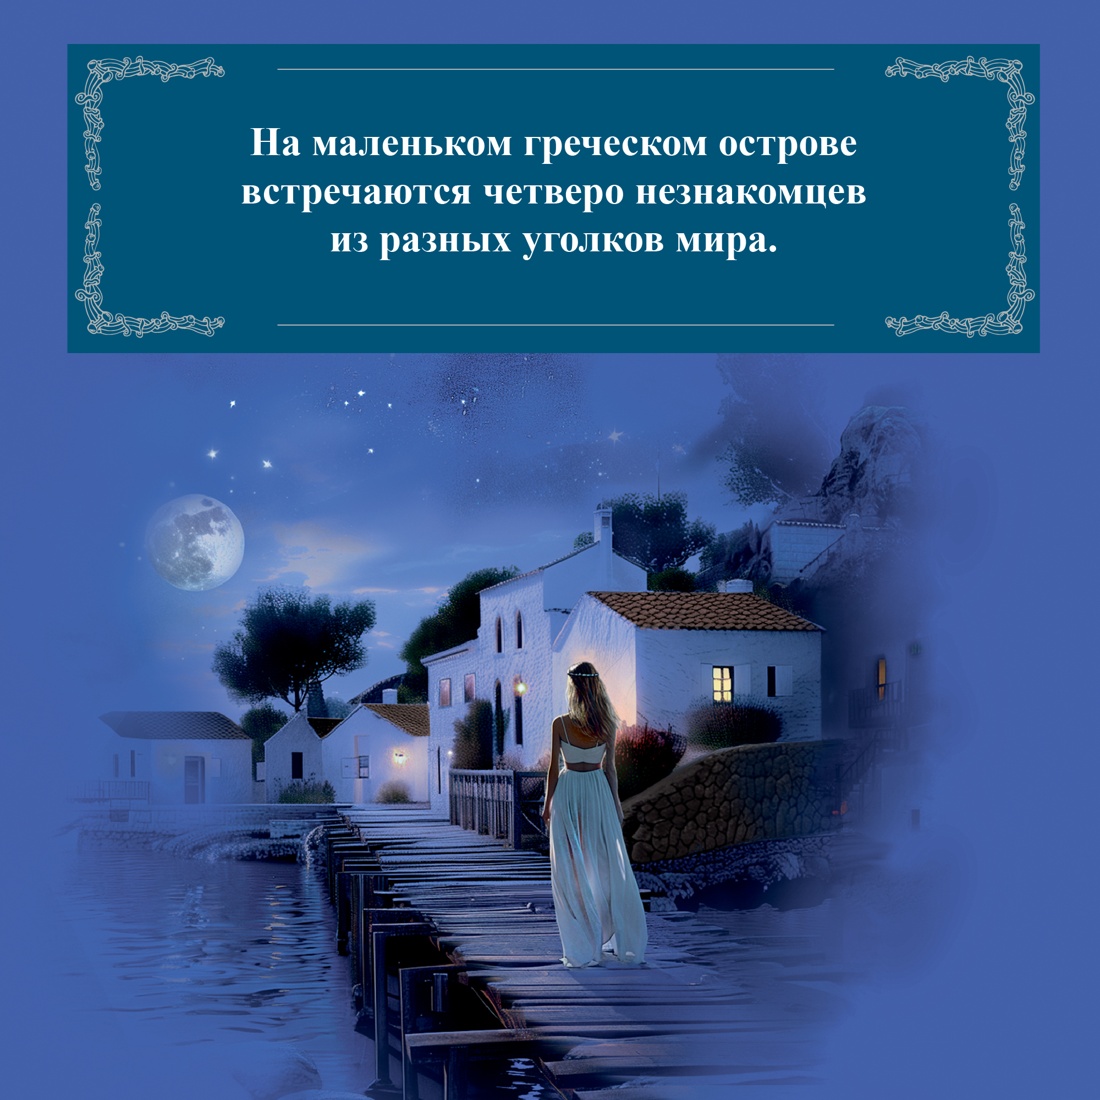 Промо материал к книге "Ночи дождей и звезд" №2